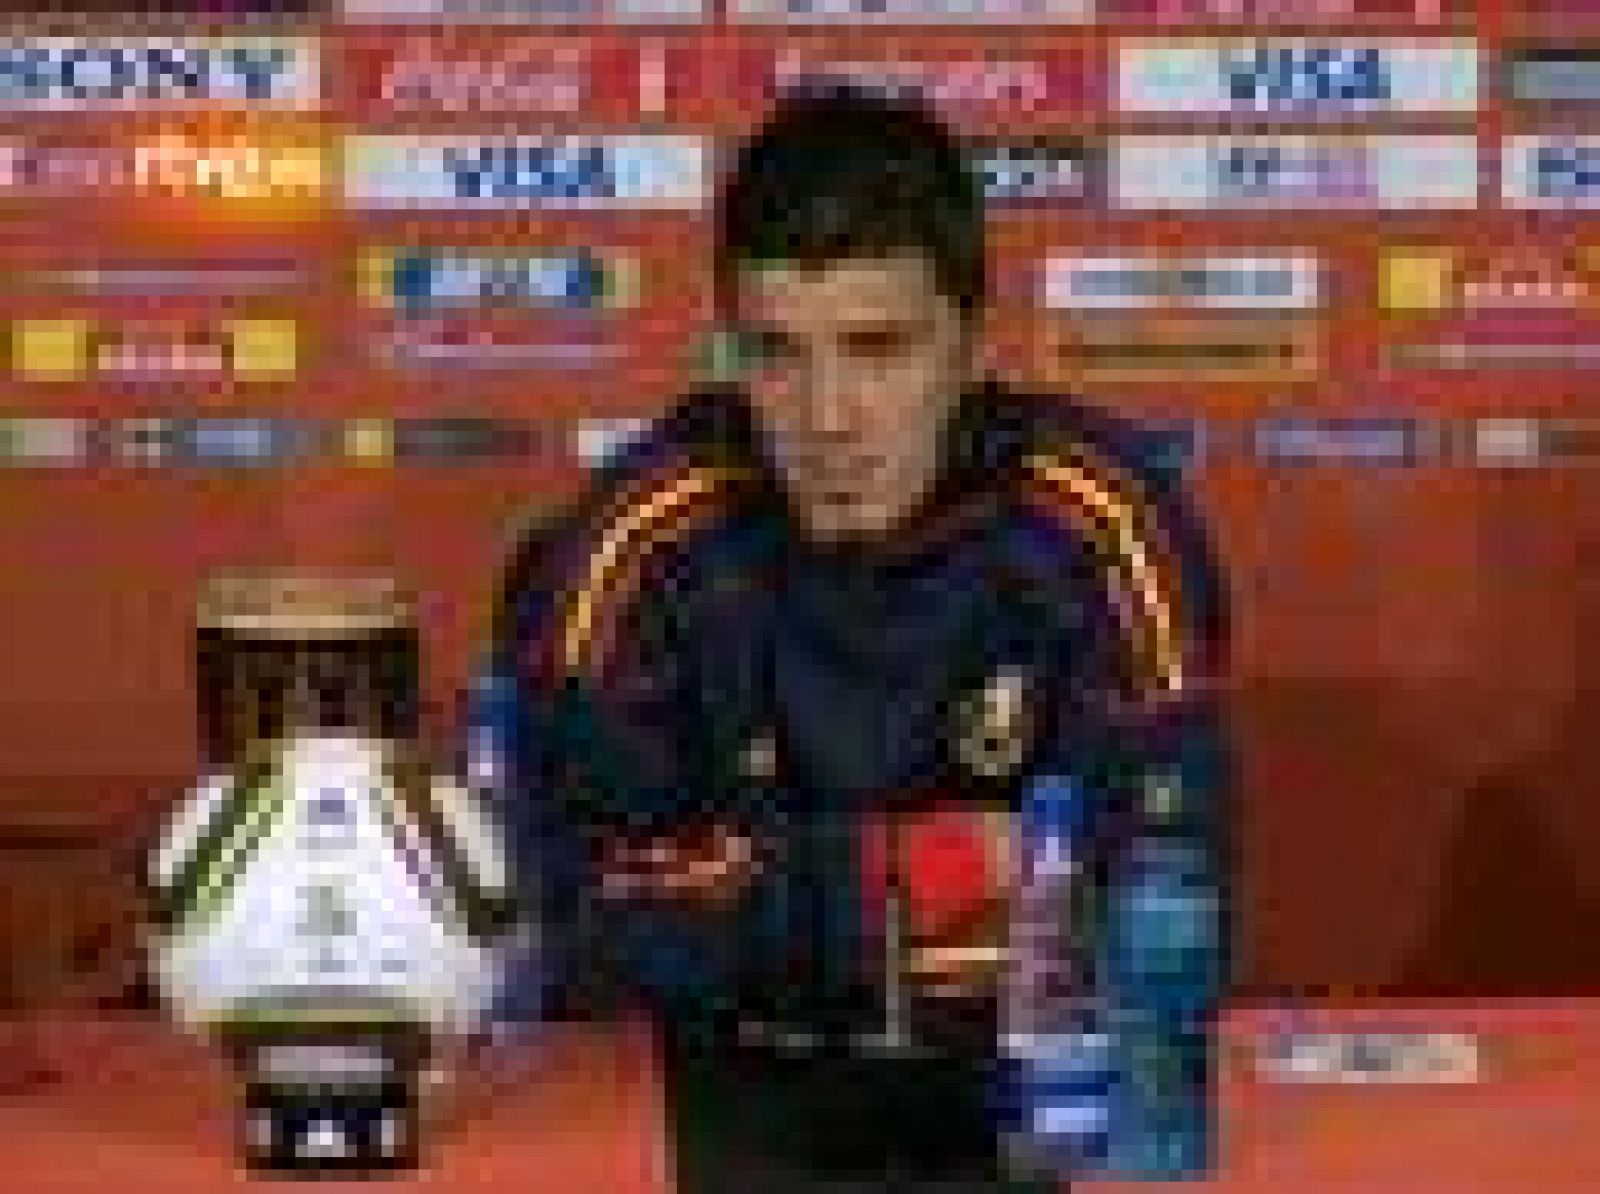 El protagonista del partido, David Villa, compareció en la rueda prensa para reconocer que España debería de haber conseguido más goles. Su fallo en el penalti no fue causado por la presión porque "lleva tirando penaltis toda la vida". Iker Casillas: